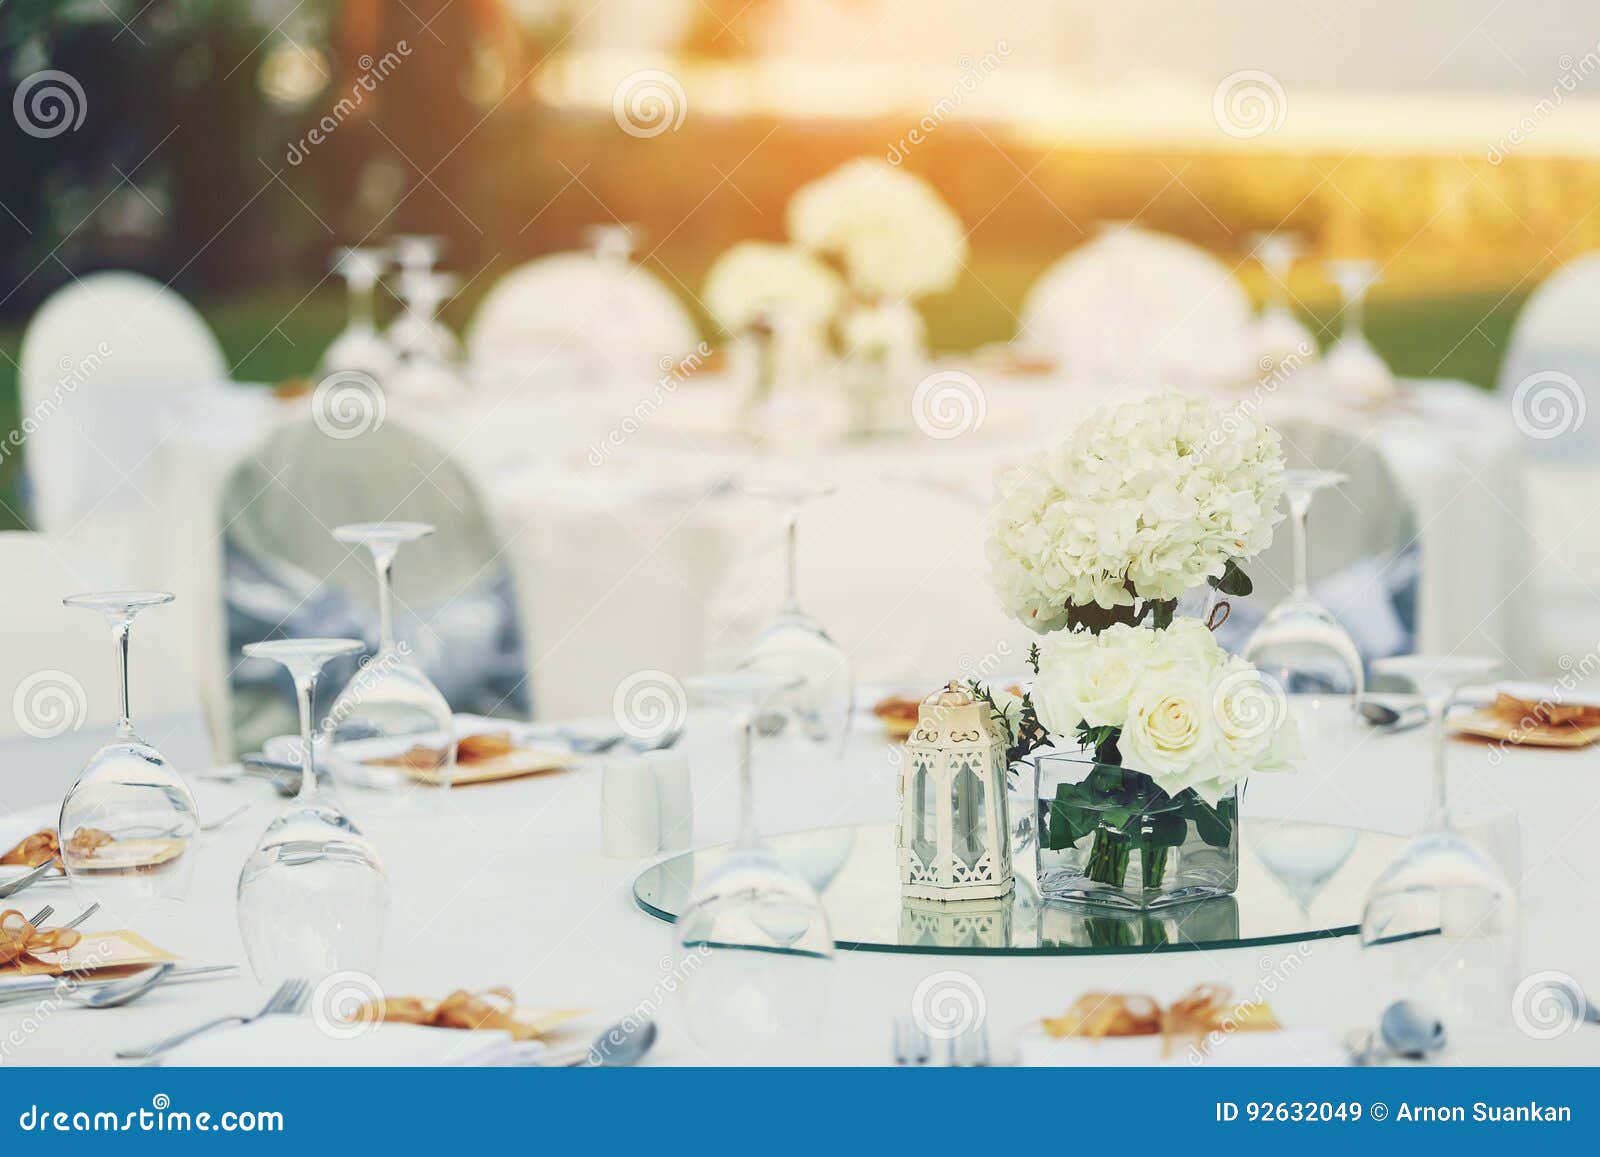 鱼子酱正餐薄煎饼表桌布. 在海滩的饭桌设置婚姻的庆祝